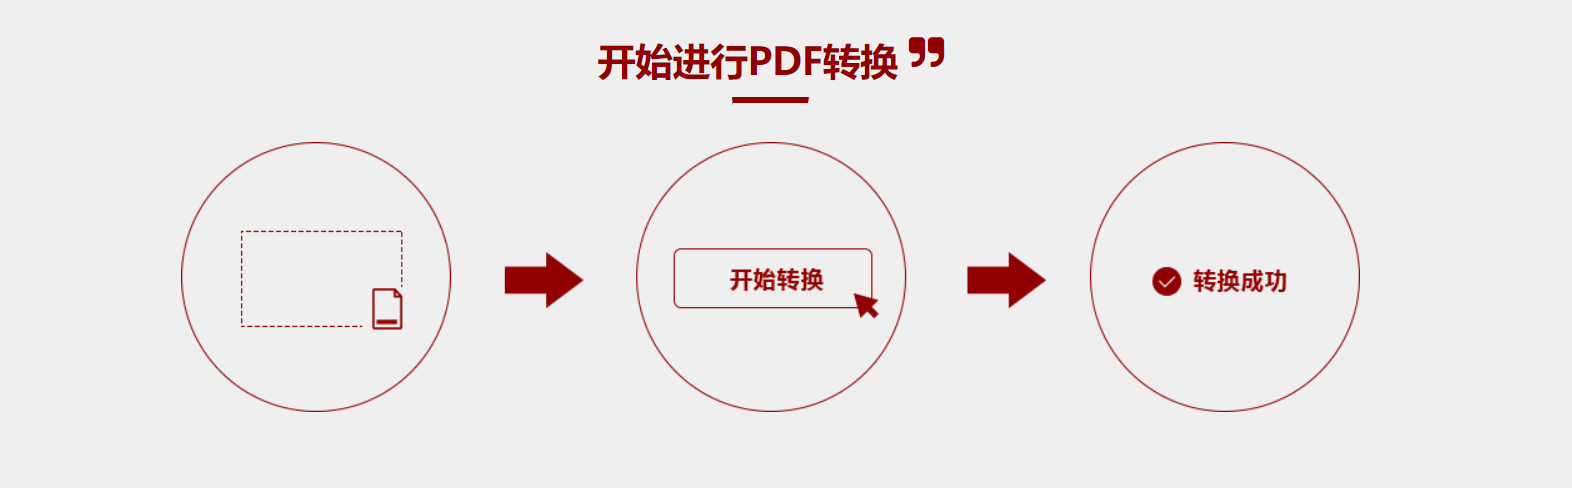 图片转PDF图